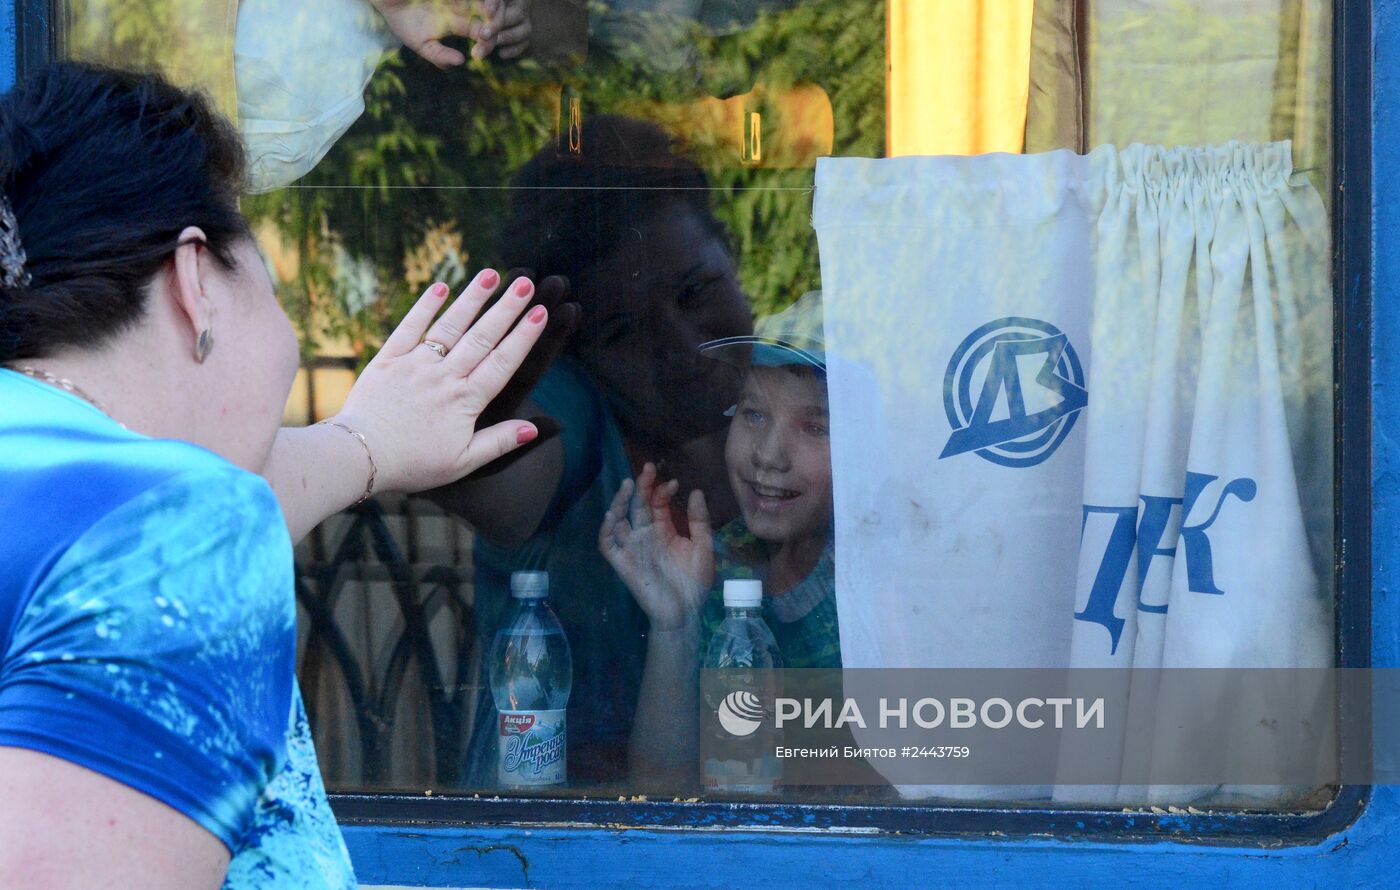 Отправка детей из детских домов Луганской области в Одессу